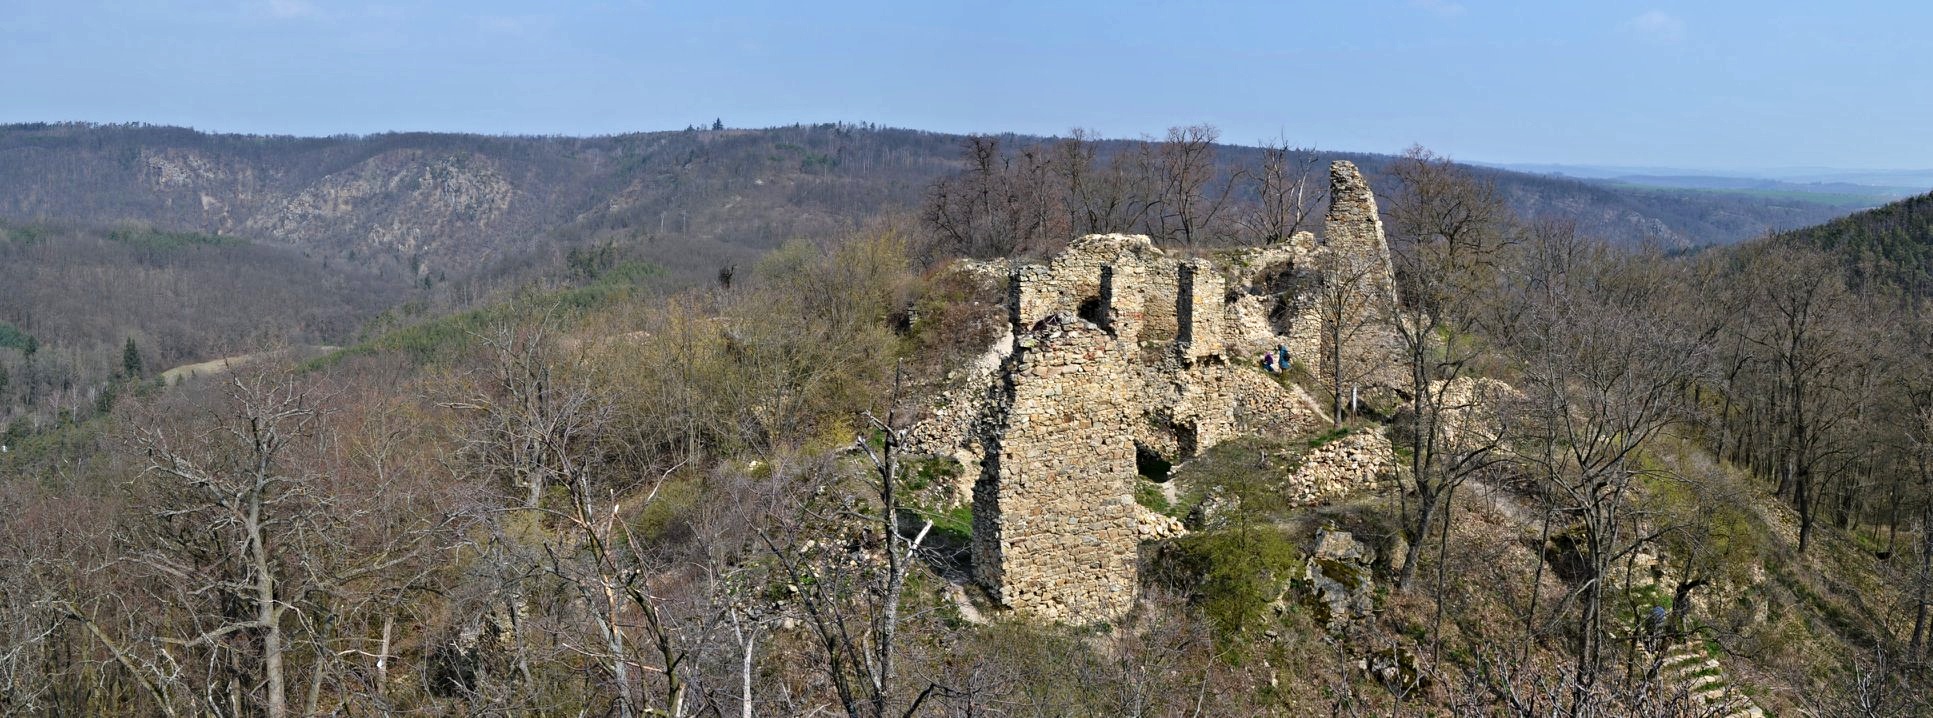 Zřícenina hradu Templštejn v údolí Jihlavy